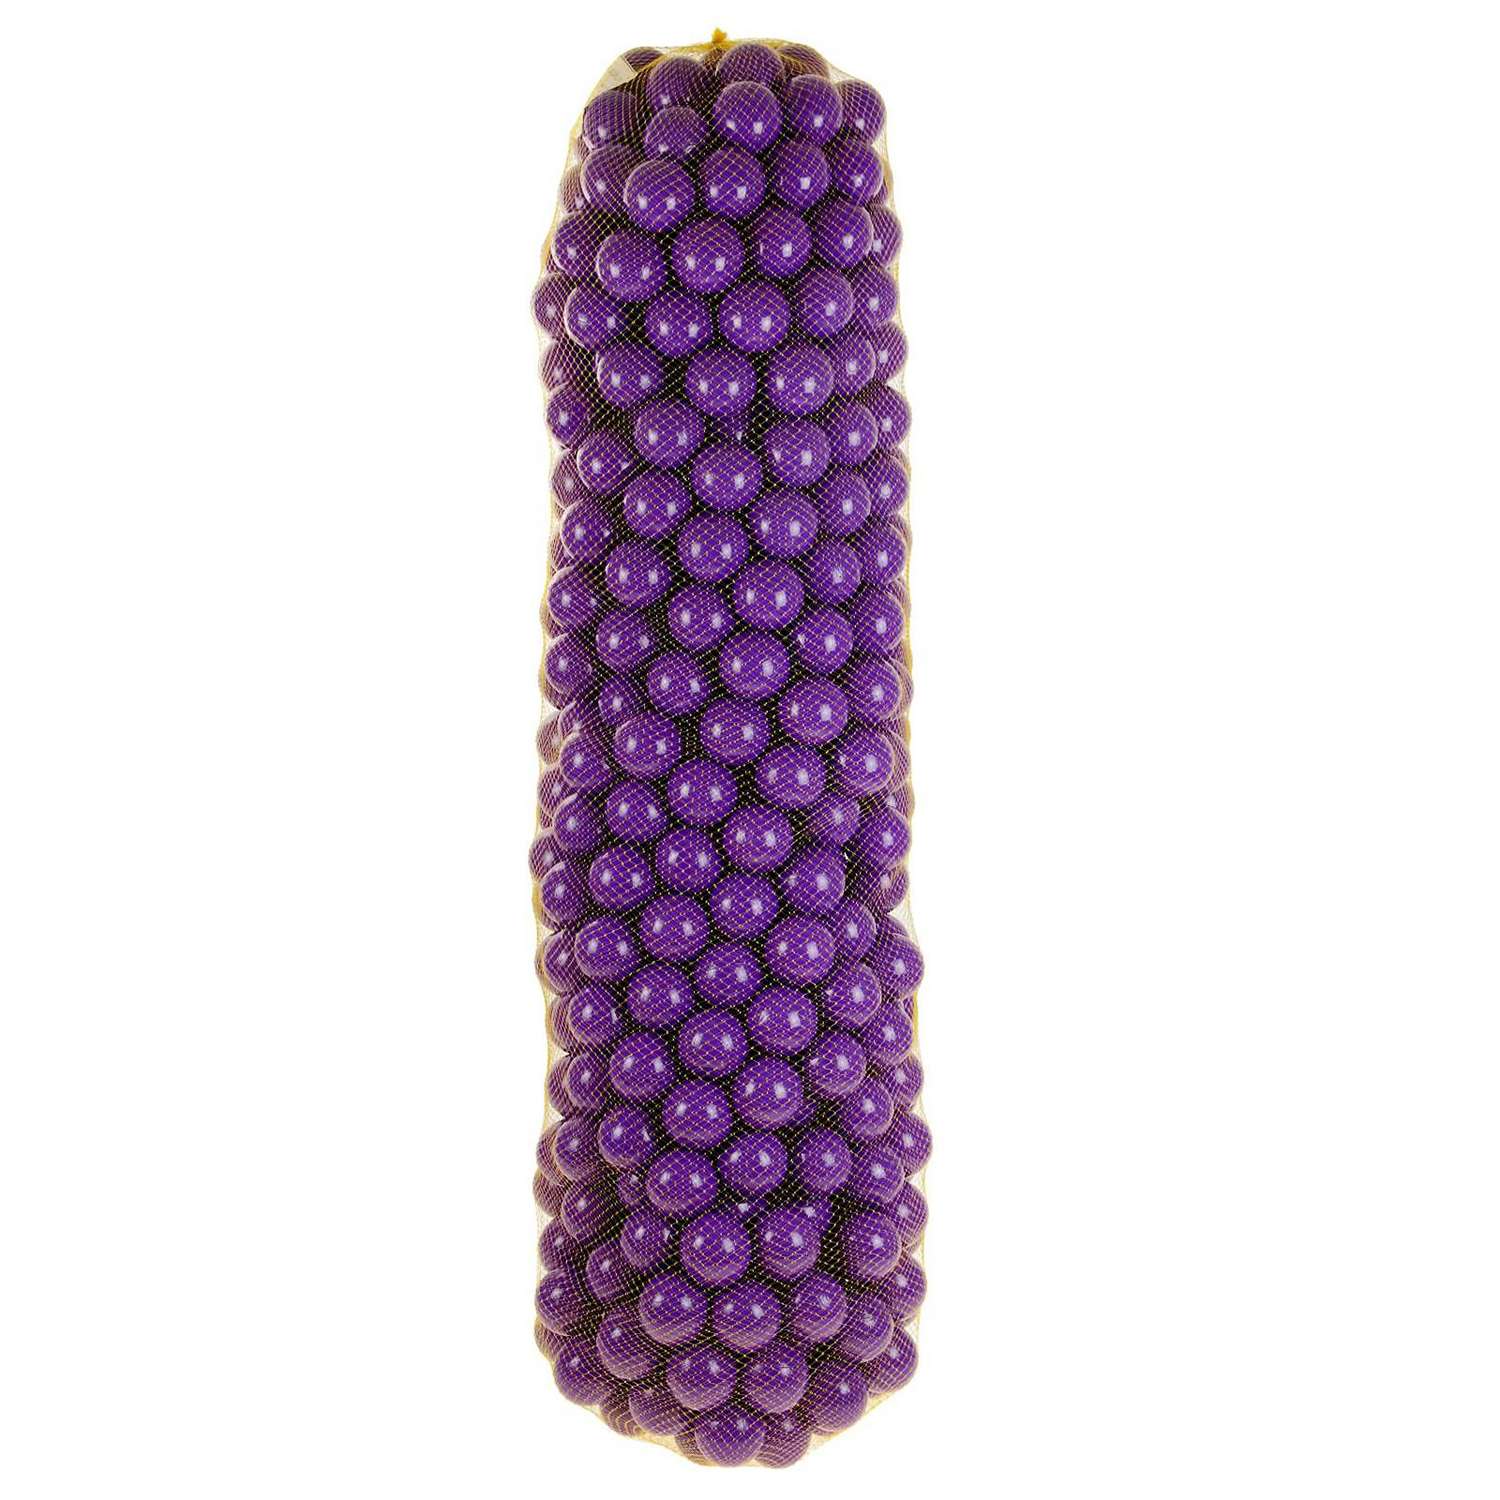 Шарики для сухого бассейна Соломон 500 шт цвет фиолетовый - фото 4